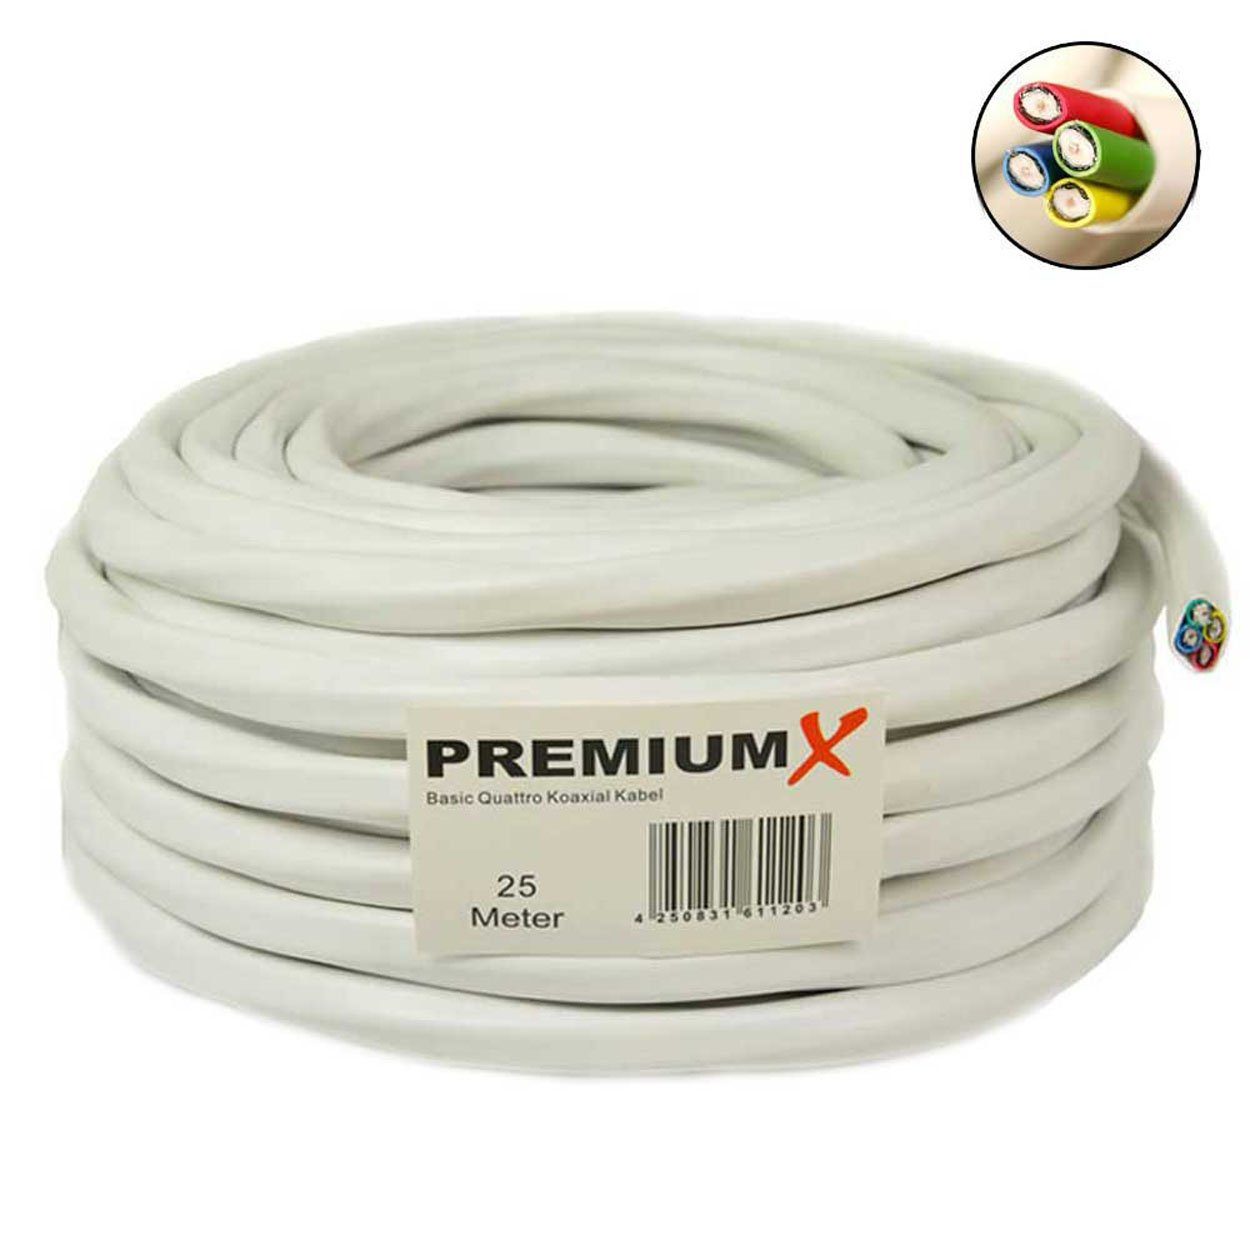 PremiumX Quattro 90dB SAT Kabel Basic 16x SAT-Kabel Weiß Koaxial Quad 25m F-Stecker